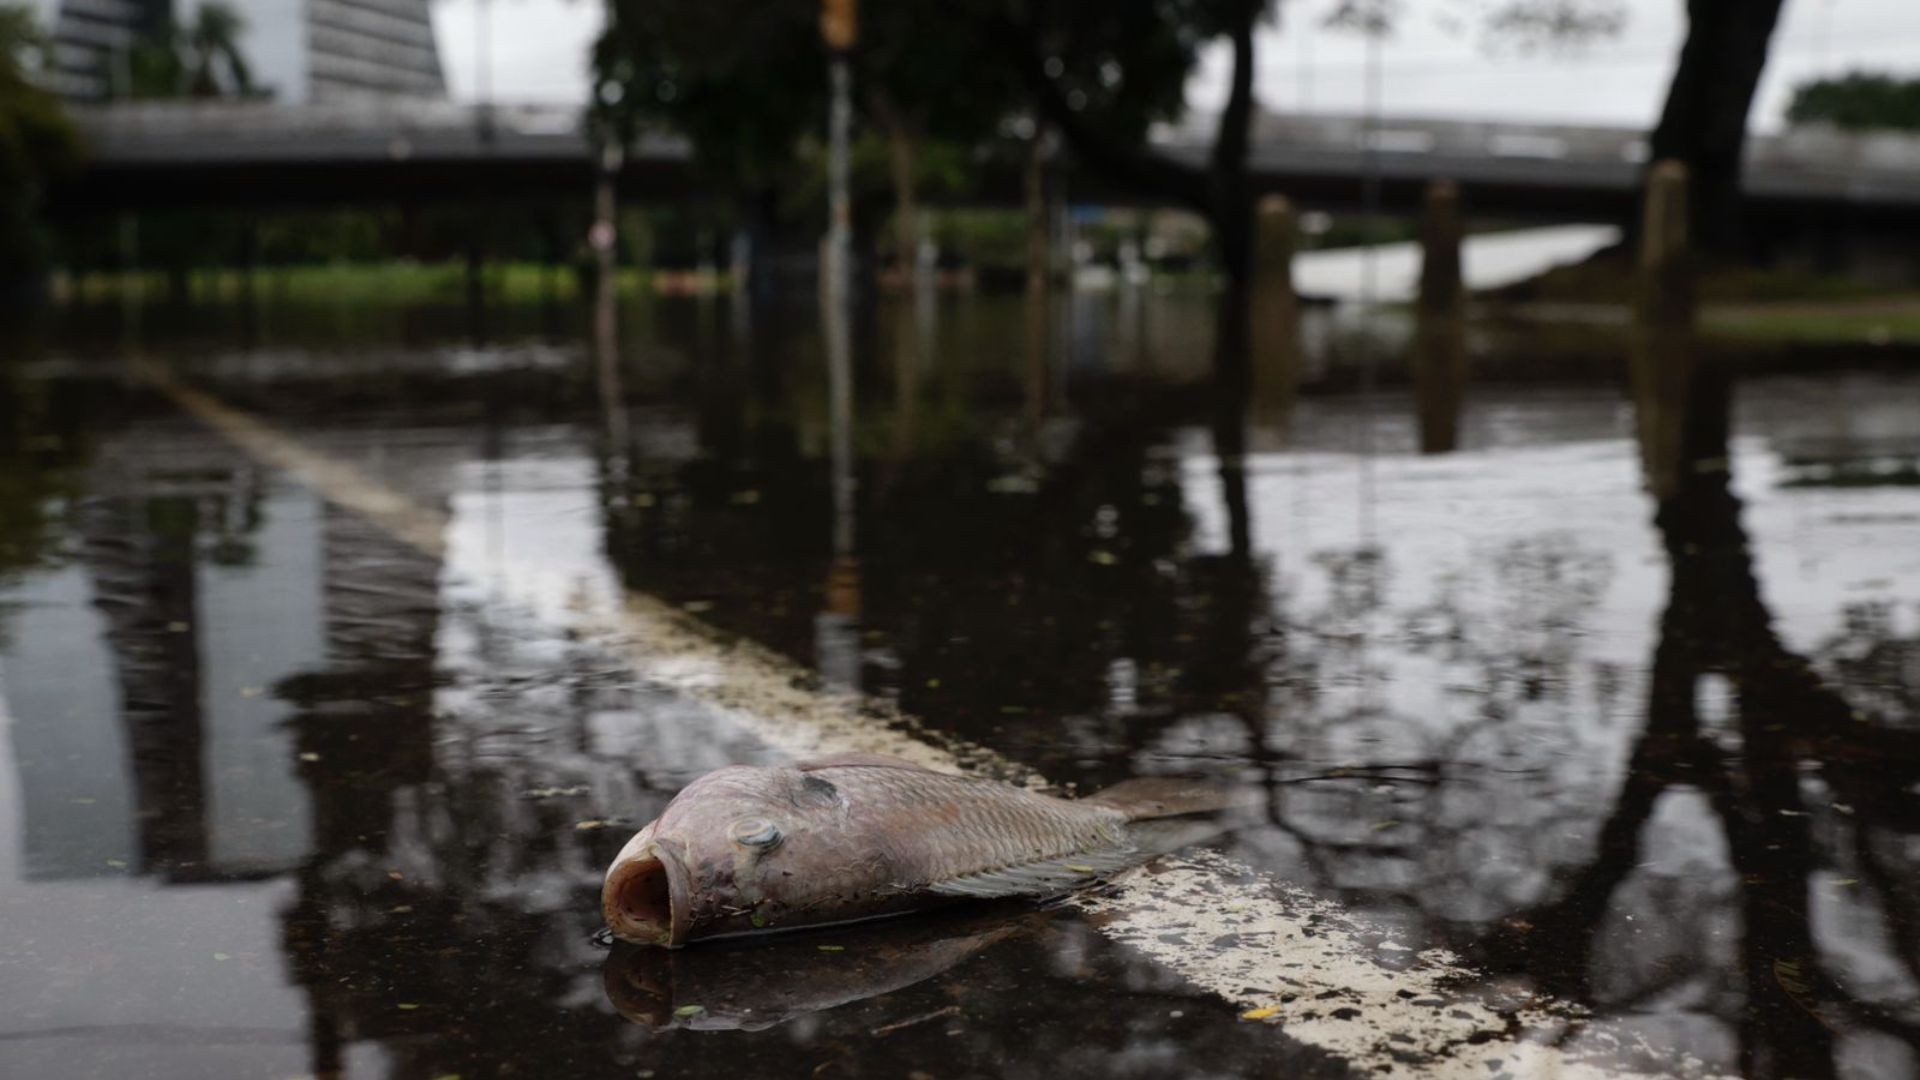 'Apareceu muito rato': com água baixando, moradores de Porto Alegre convivem com animais mortos, esgoto e mau cheiro nas ruas